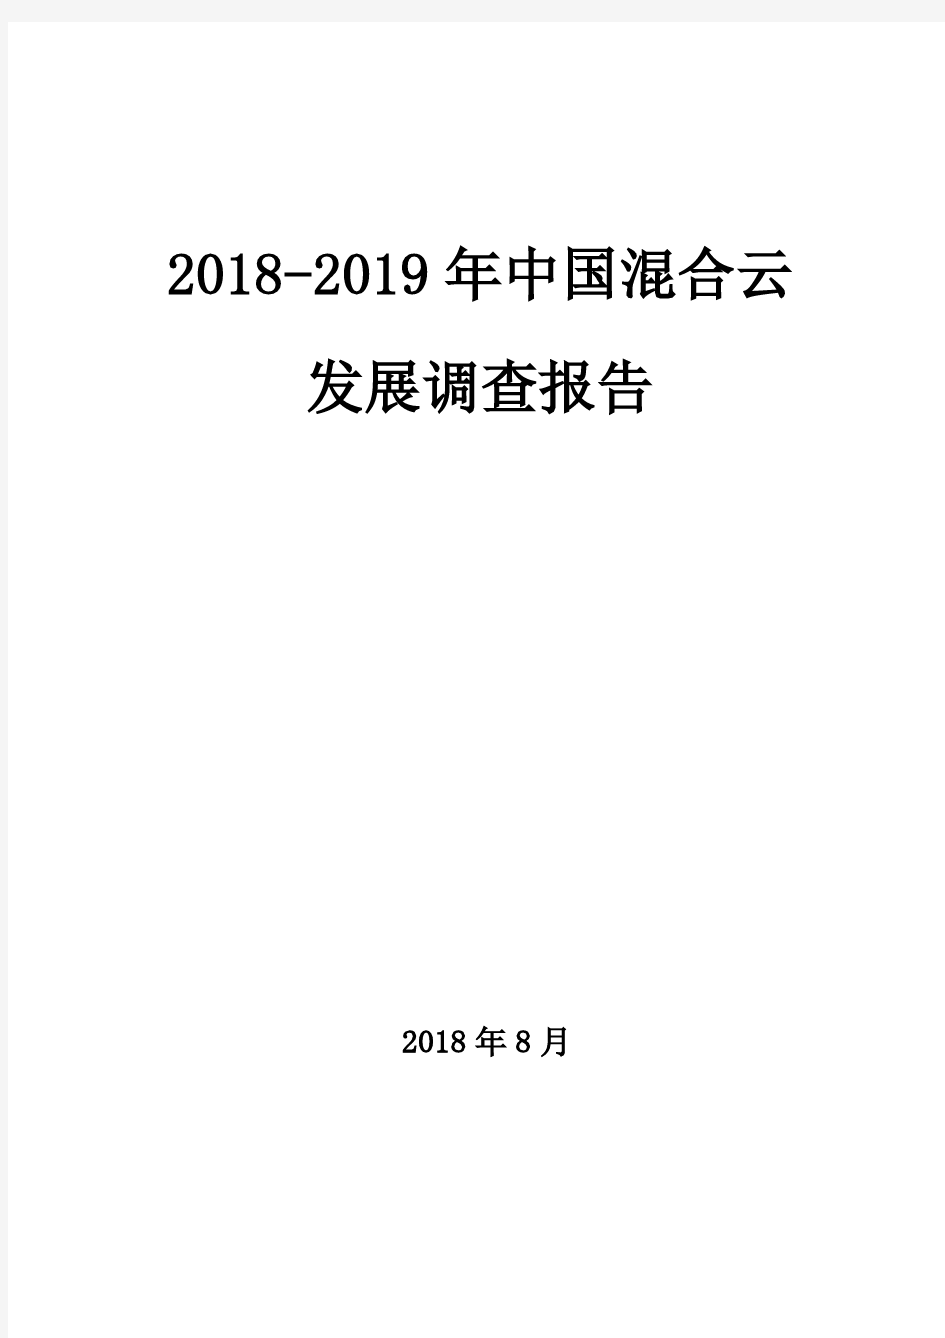 2018-2019年中国混合云发展调查报告